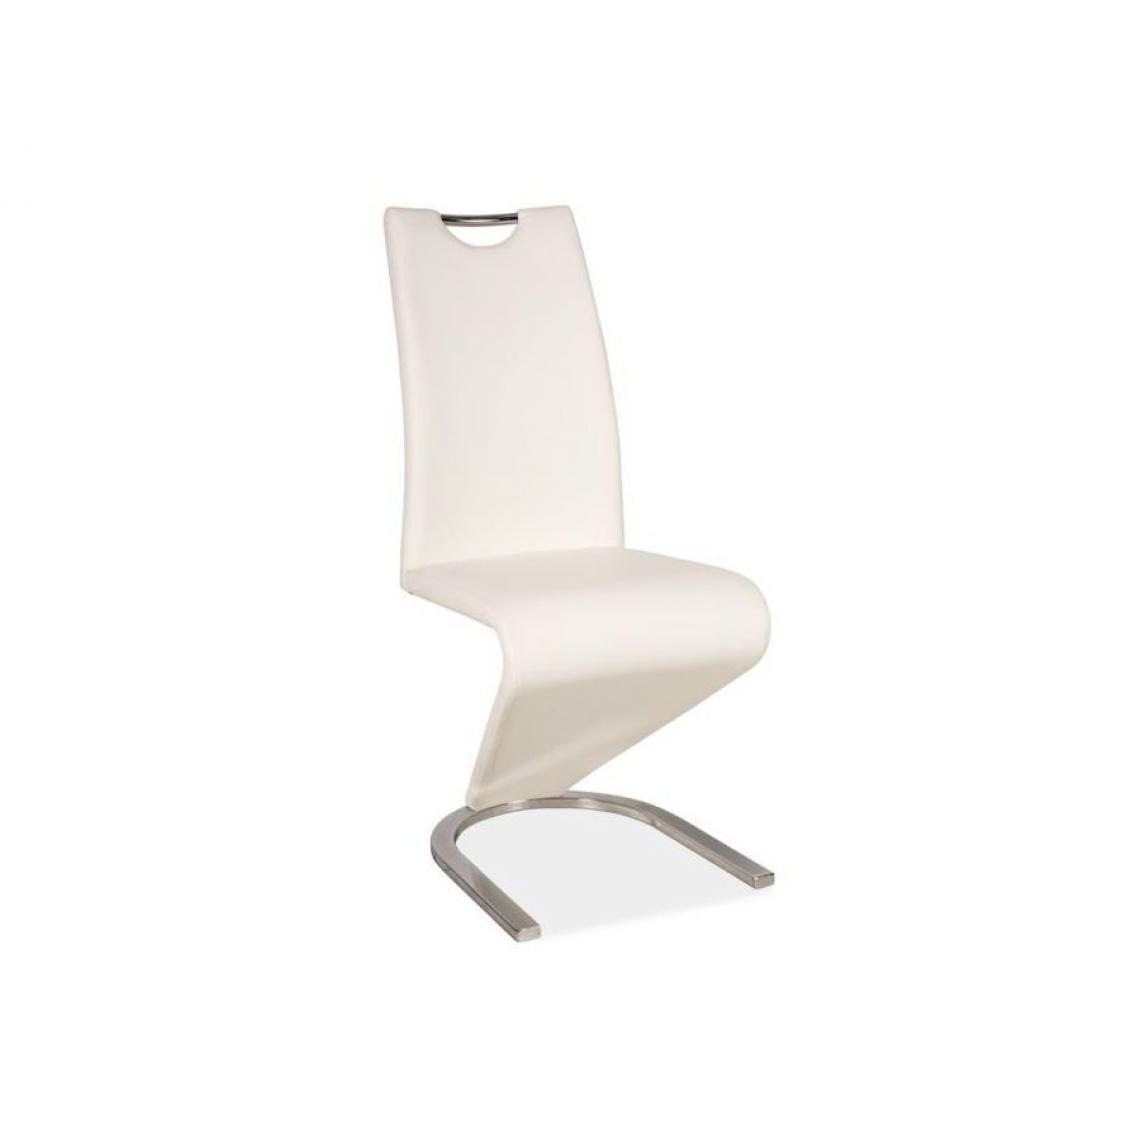 Hucoco - ENITA | Chaise minimaliste style moderne | Chaise salle à manger | Dimensions 102x43x45cm | Rembourrage en cuir écologique - Blanc - Chaises